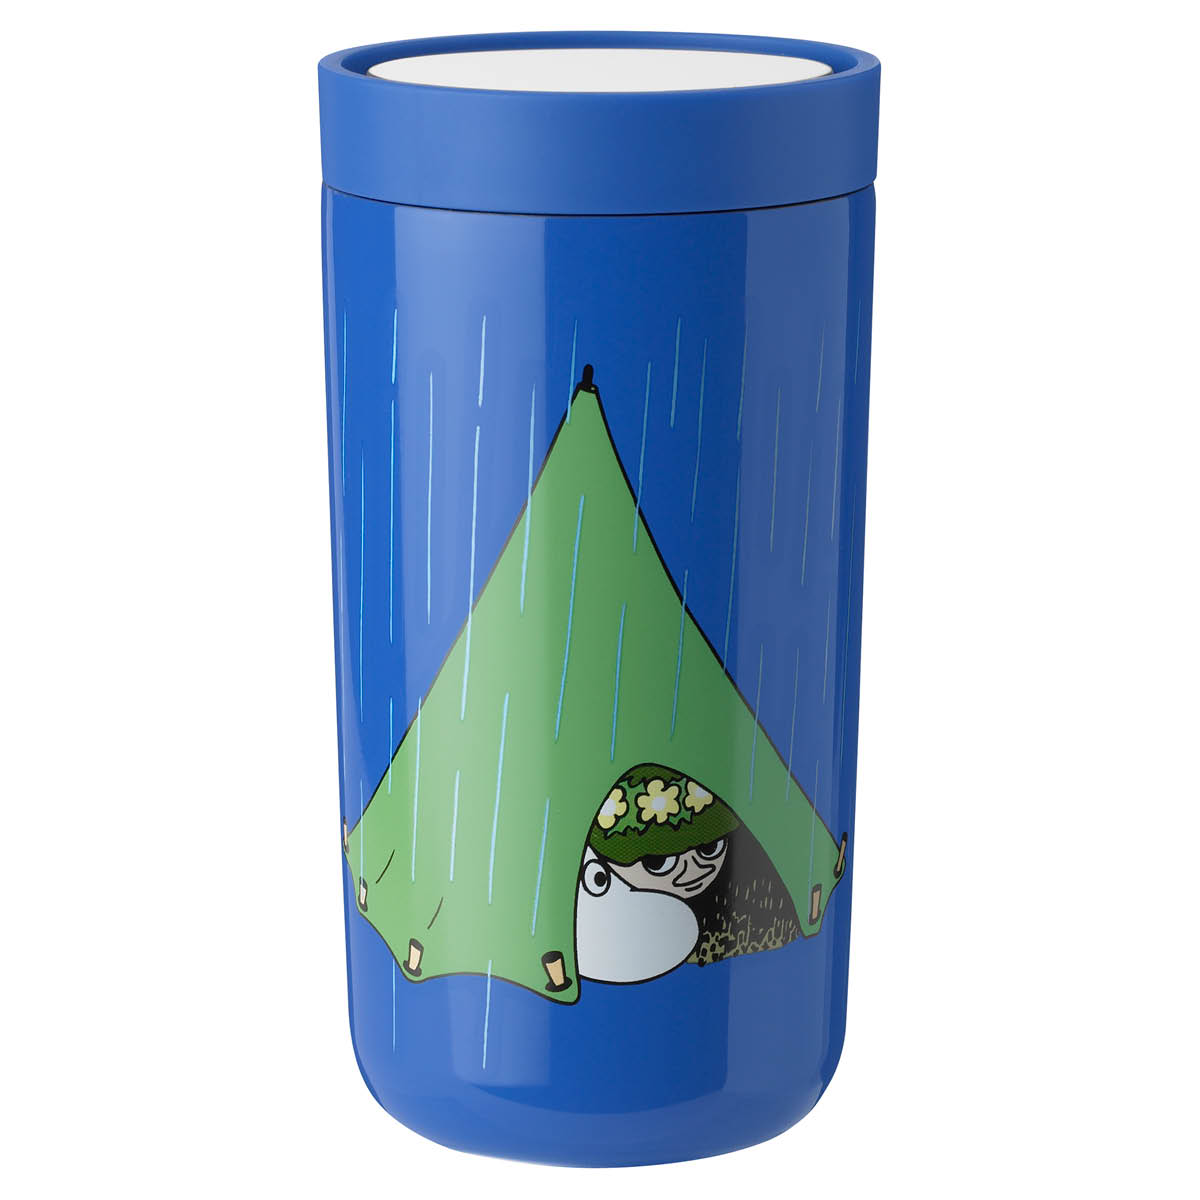 Stelton – Mumin To Go Click Termosmugg 0.2 L Moomin camping